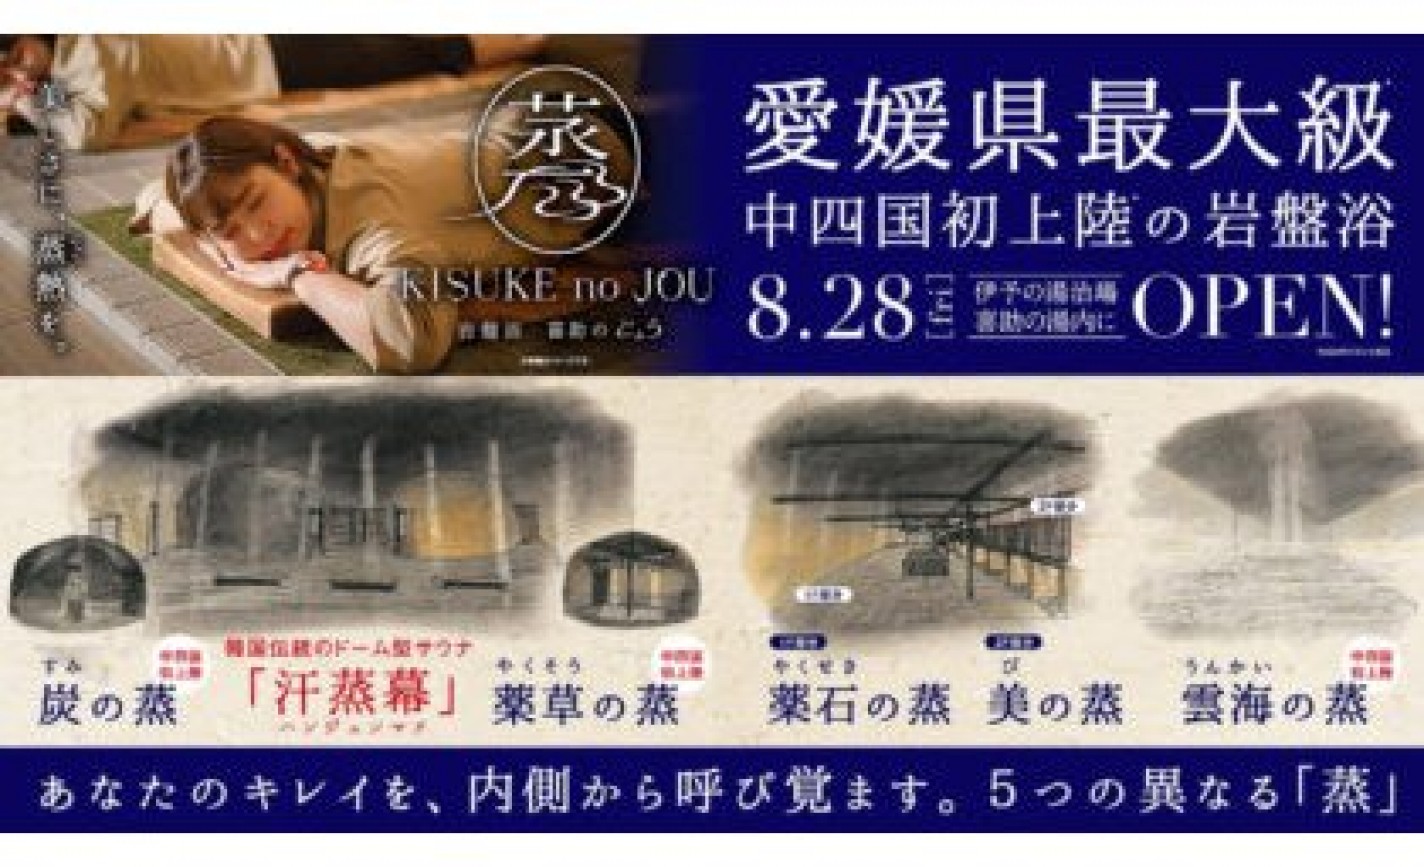 キスケ、愛媛最大級の岩盤浴を8月下旬にオープン eyecatch-image